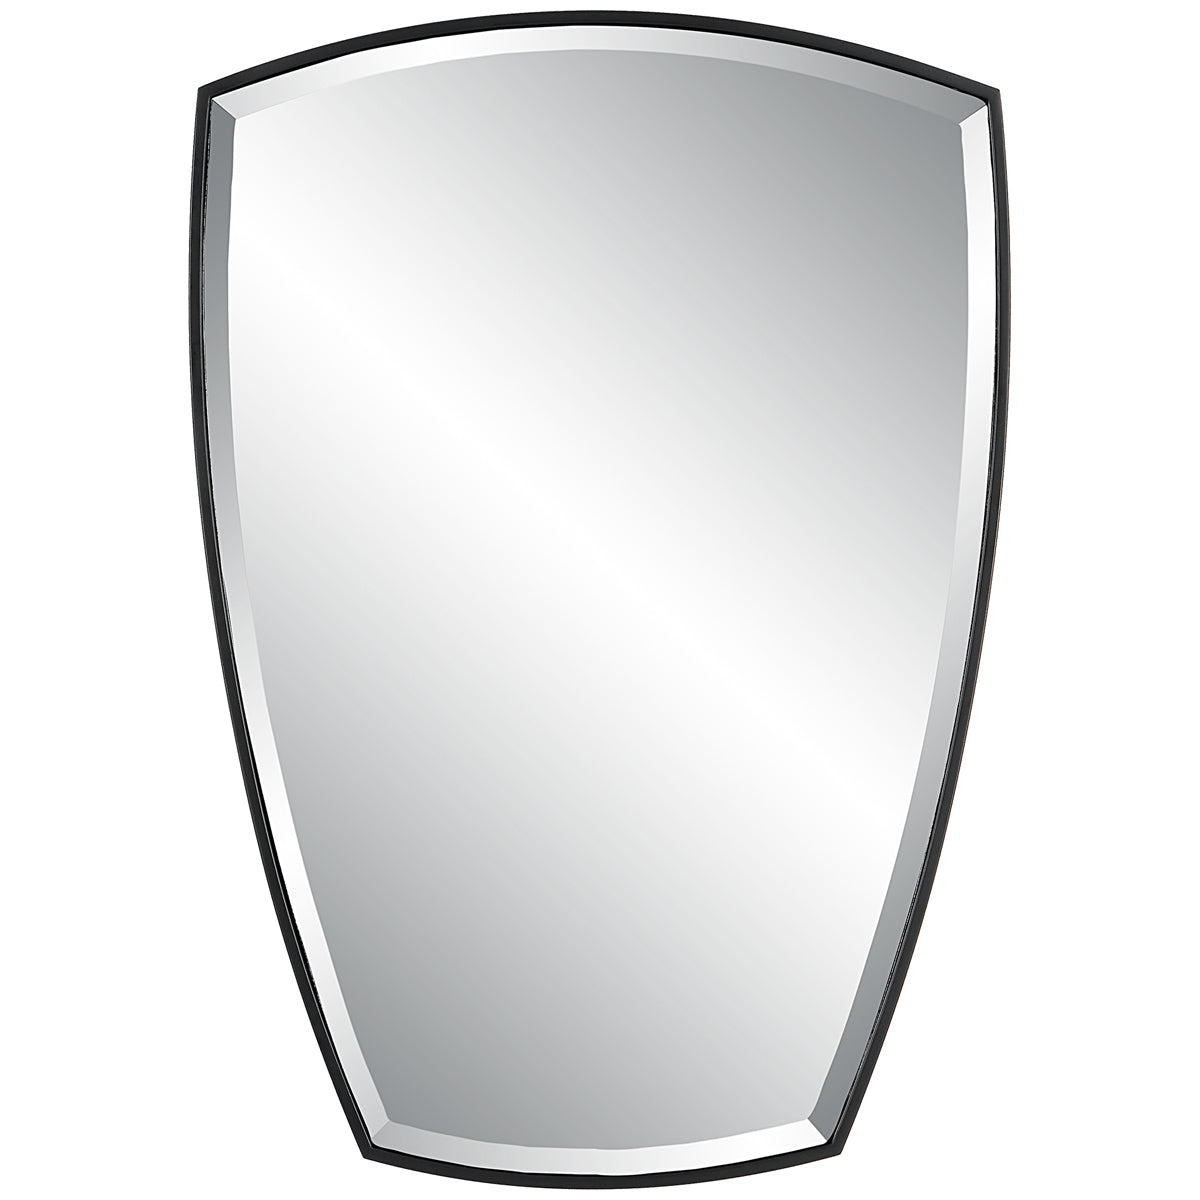 Uttermost Crest Curved Iron Mirror